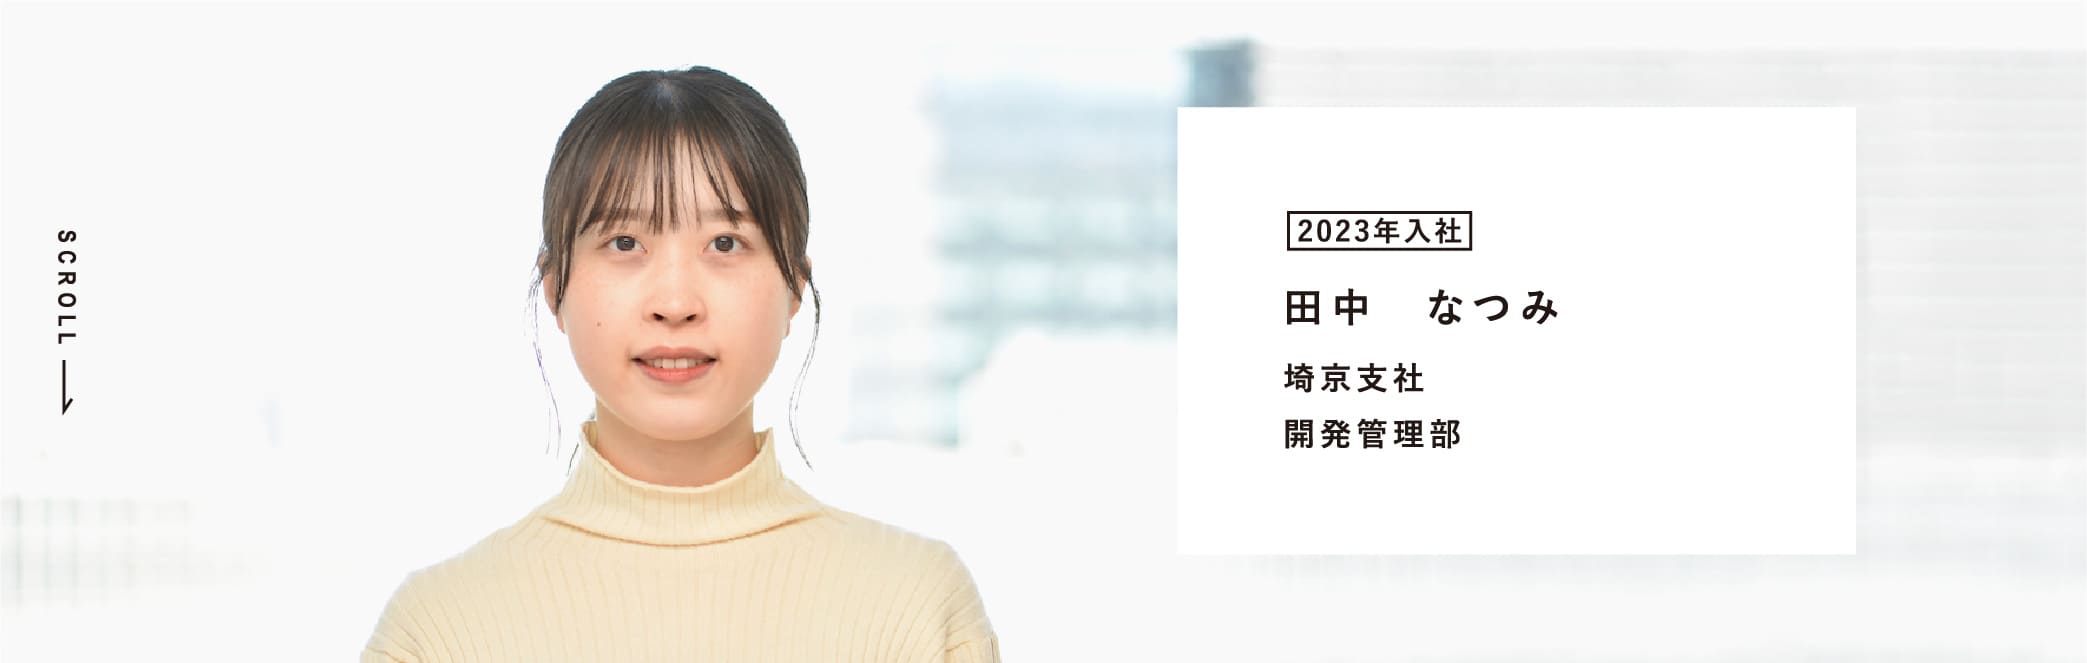 2023年进入公司田中夏美埼京分公司开发管理部